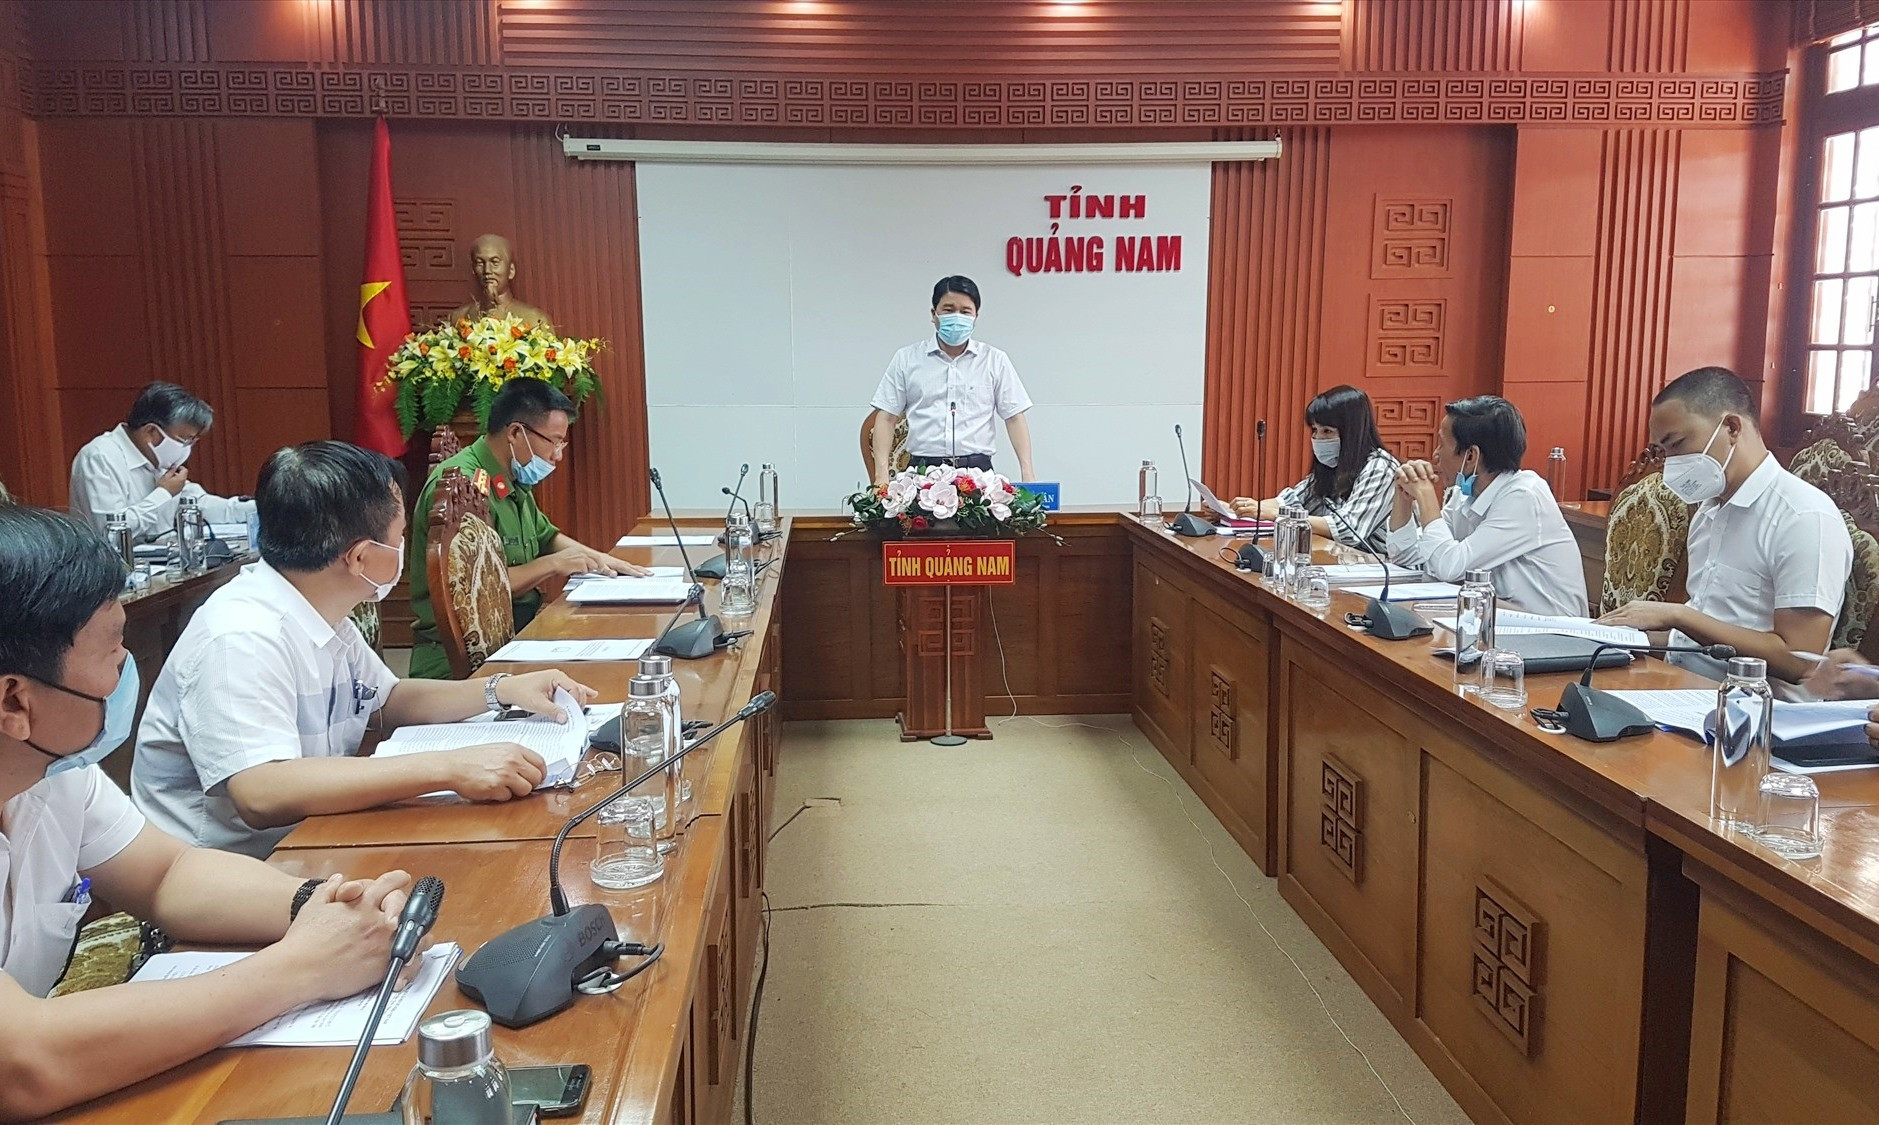 Phó Chủ tịch UBND tỉnh Trần Văn Tân chủ trì buổi làm việc về công tác cai nghiện ma túy sáng nay. Ảnh: D.L